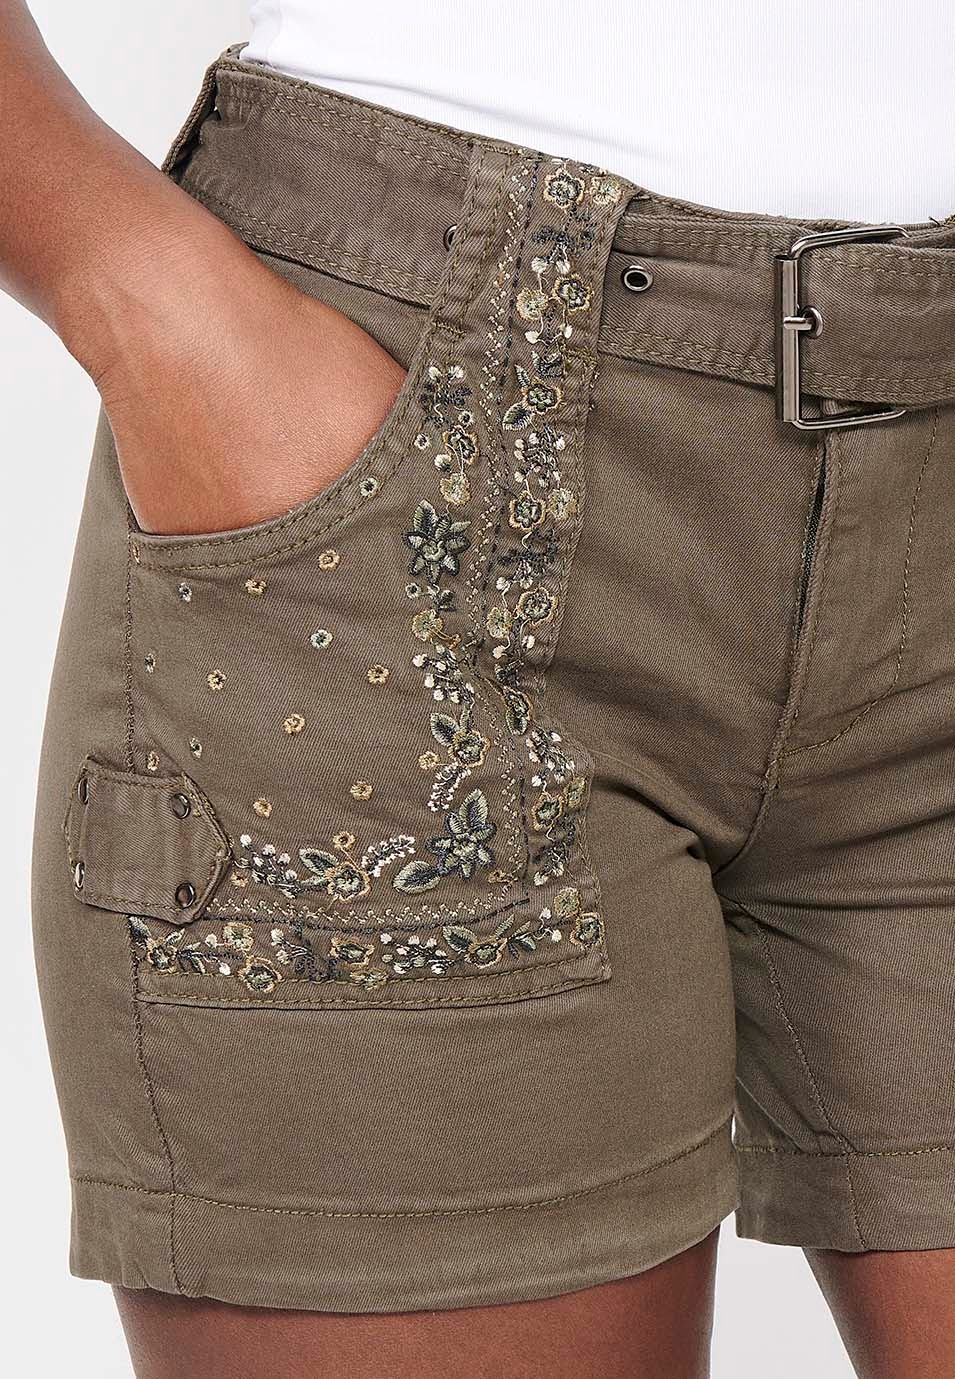 Pantalón corto, bolsillos con bordados florales. Cintua ajustable con cinturón, color kaki para mujer